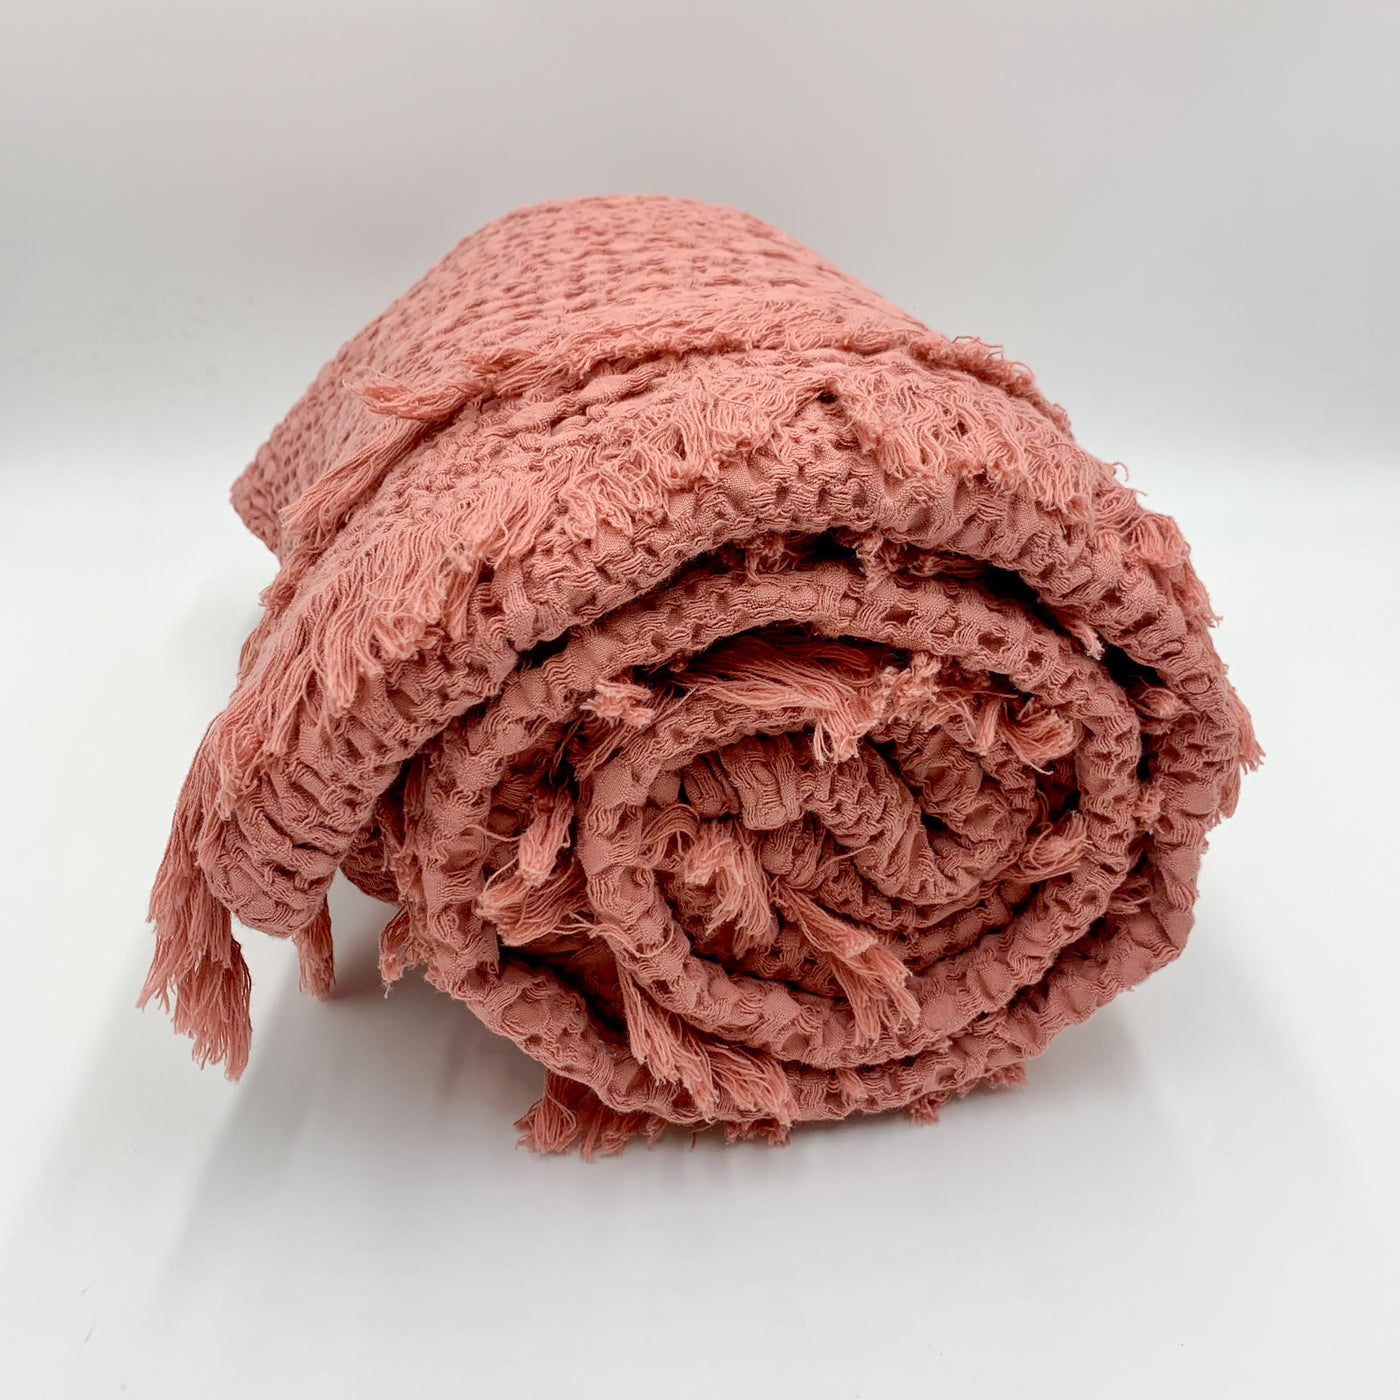 Textil Mantas y plaids Fibras naturales Rosa